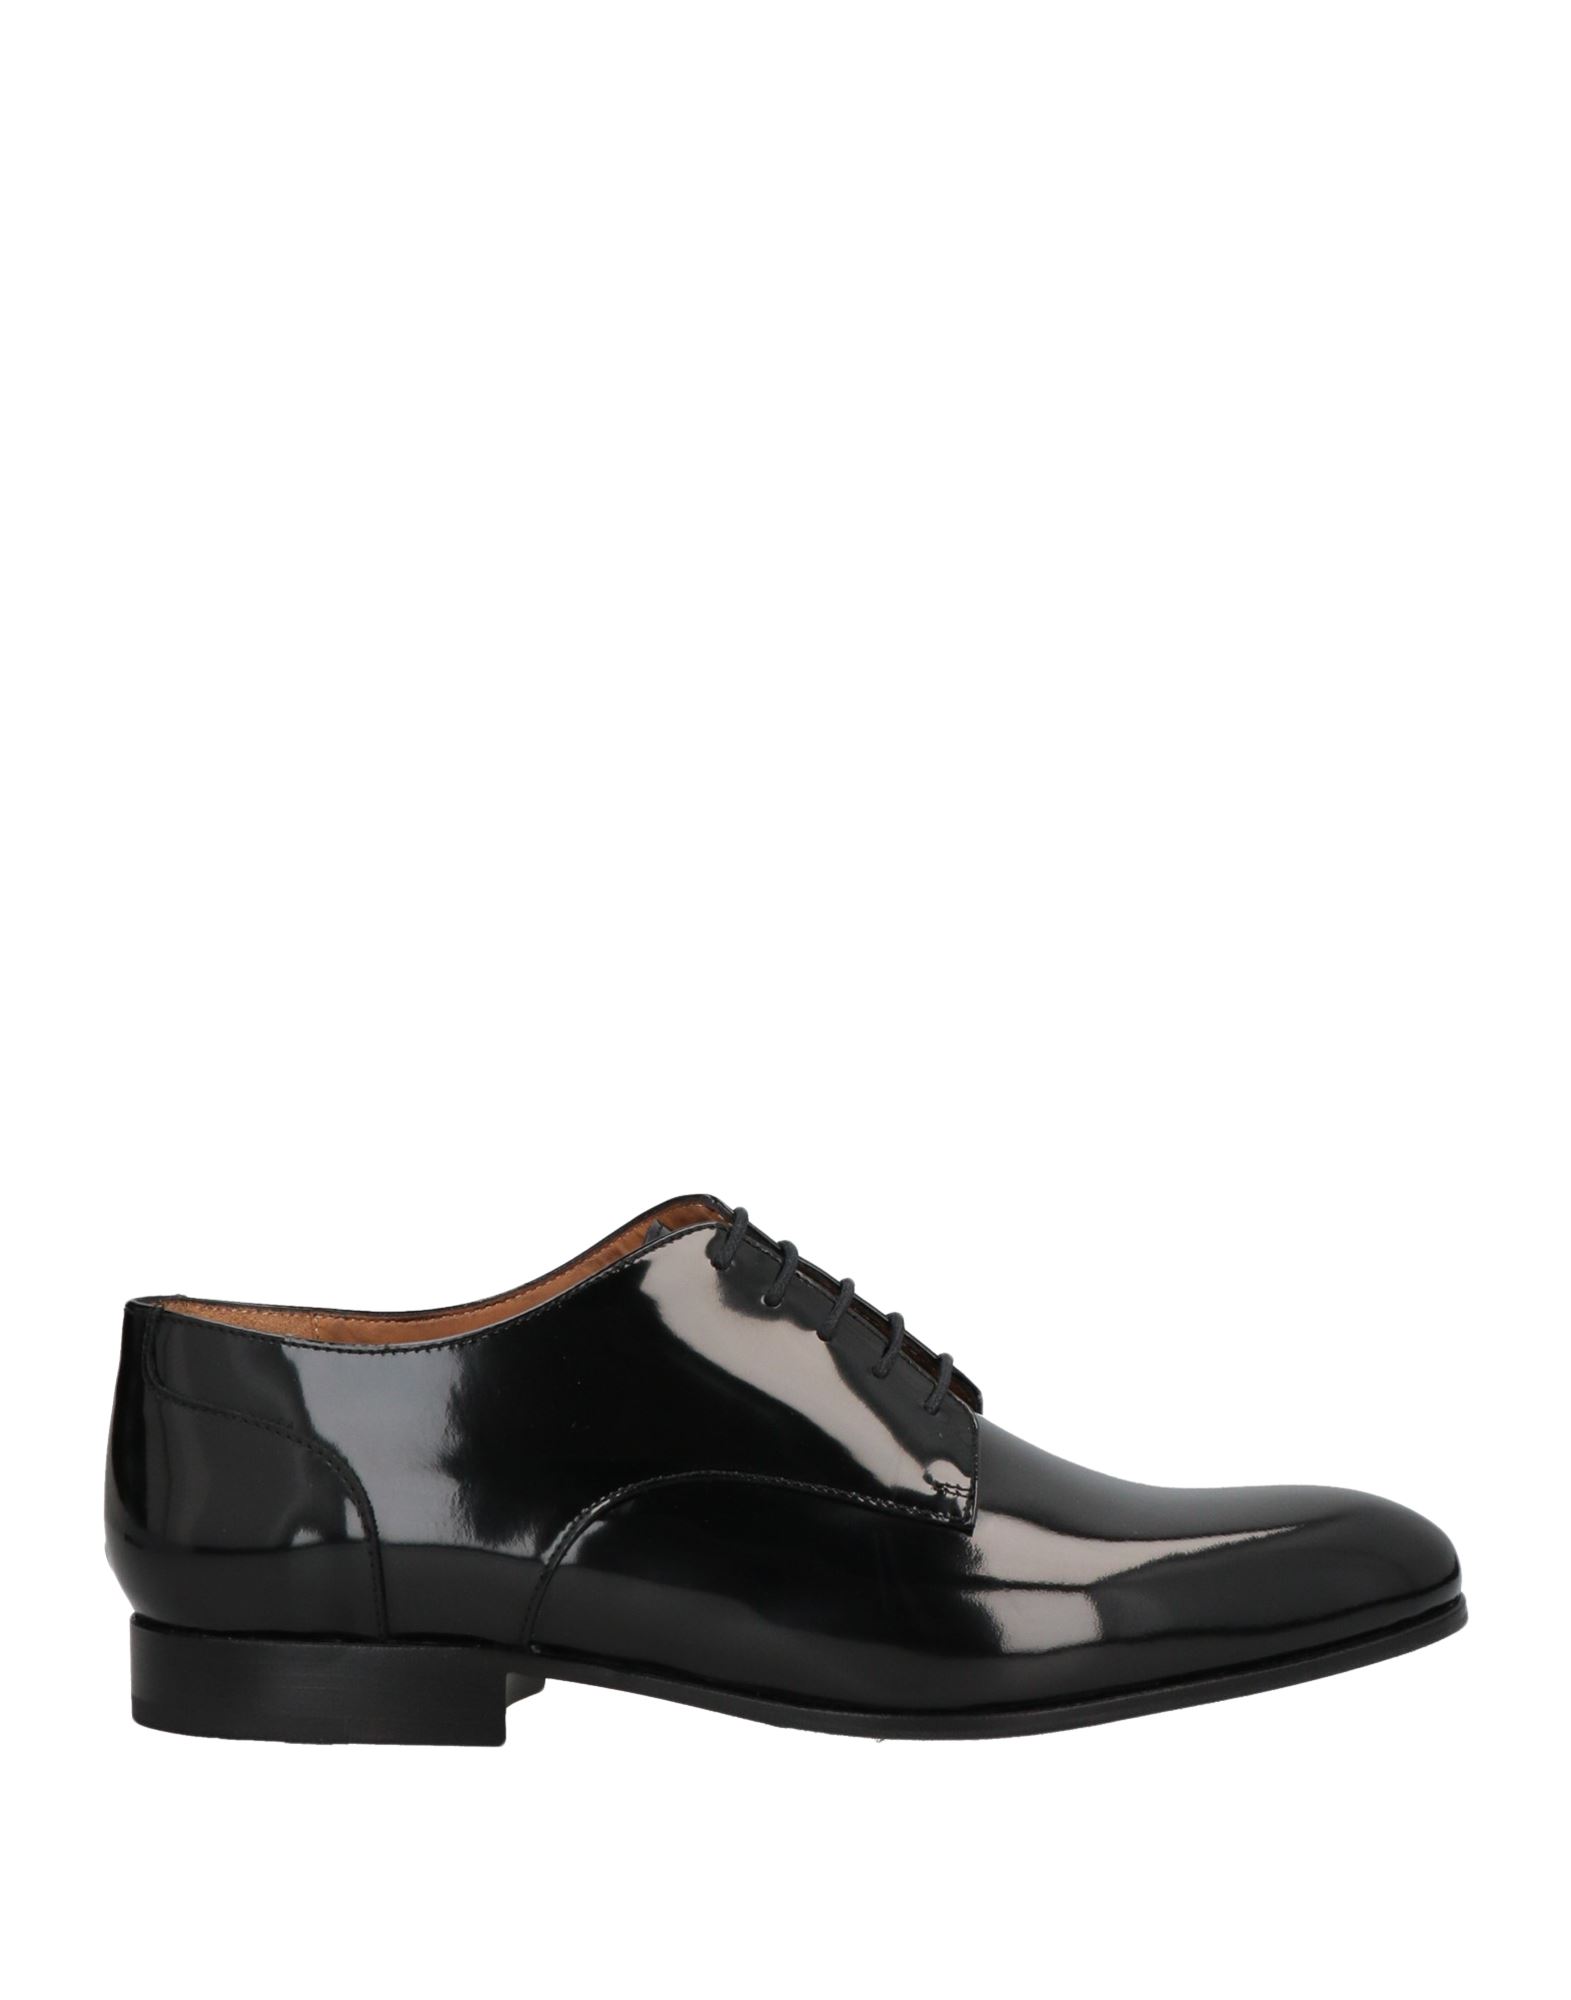 Shop Valentino Garavani Man Lace-up Shoes Black Size 6 Soft Leather